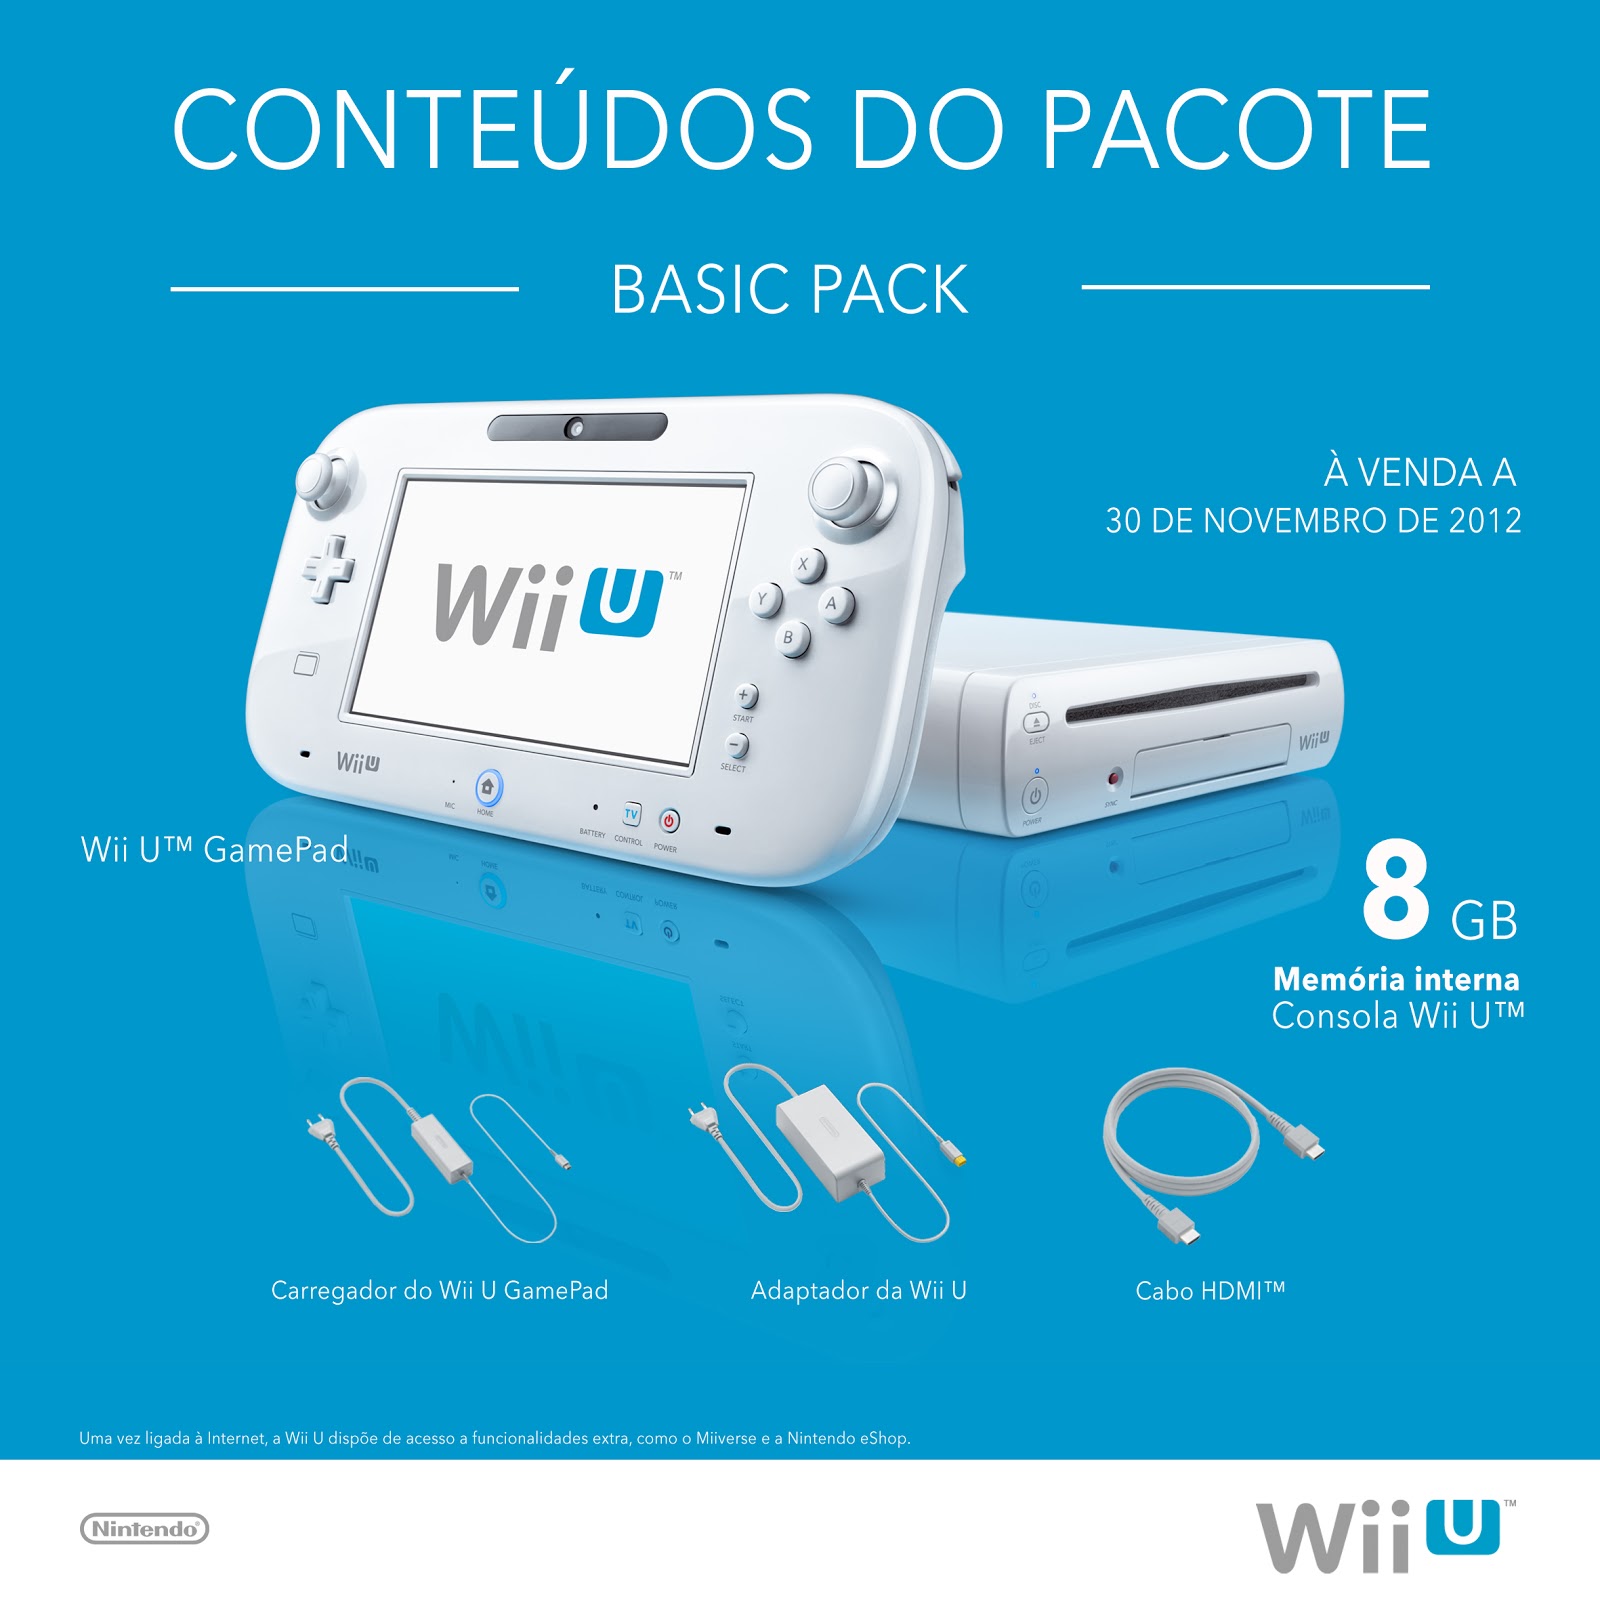 Nintendo Selects - Novos jogos para a Wii U! 